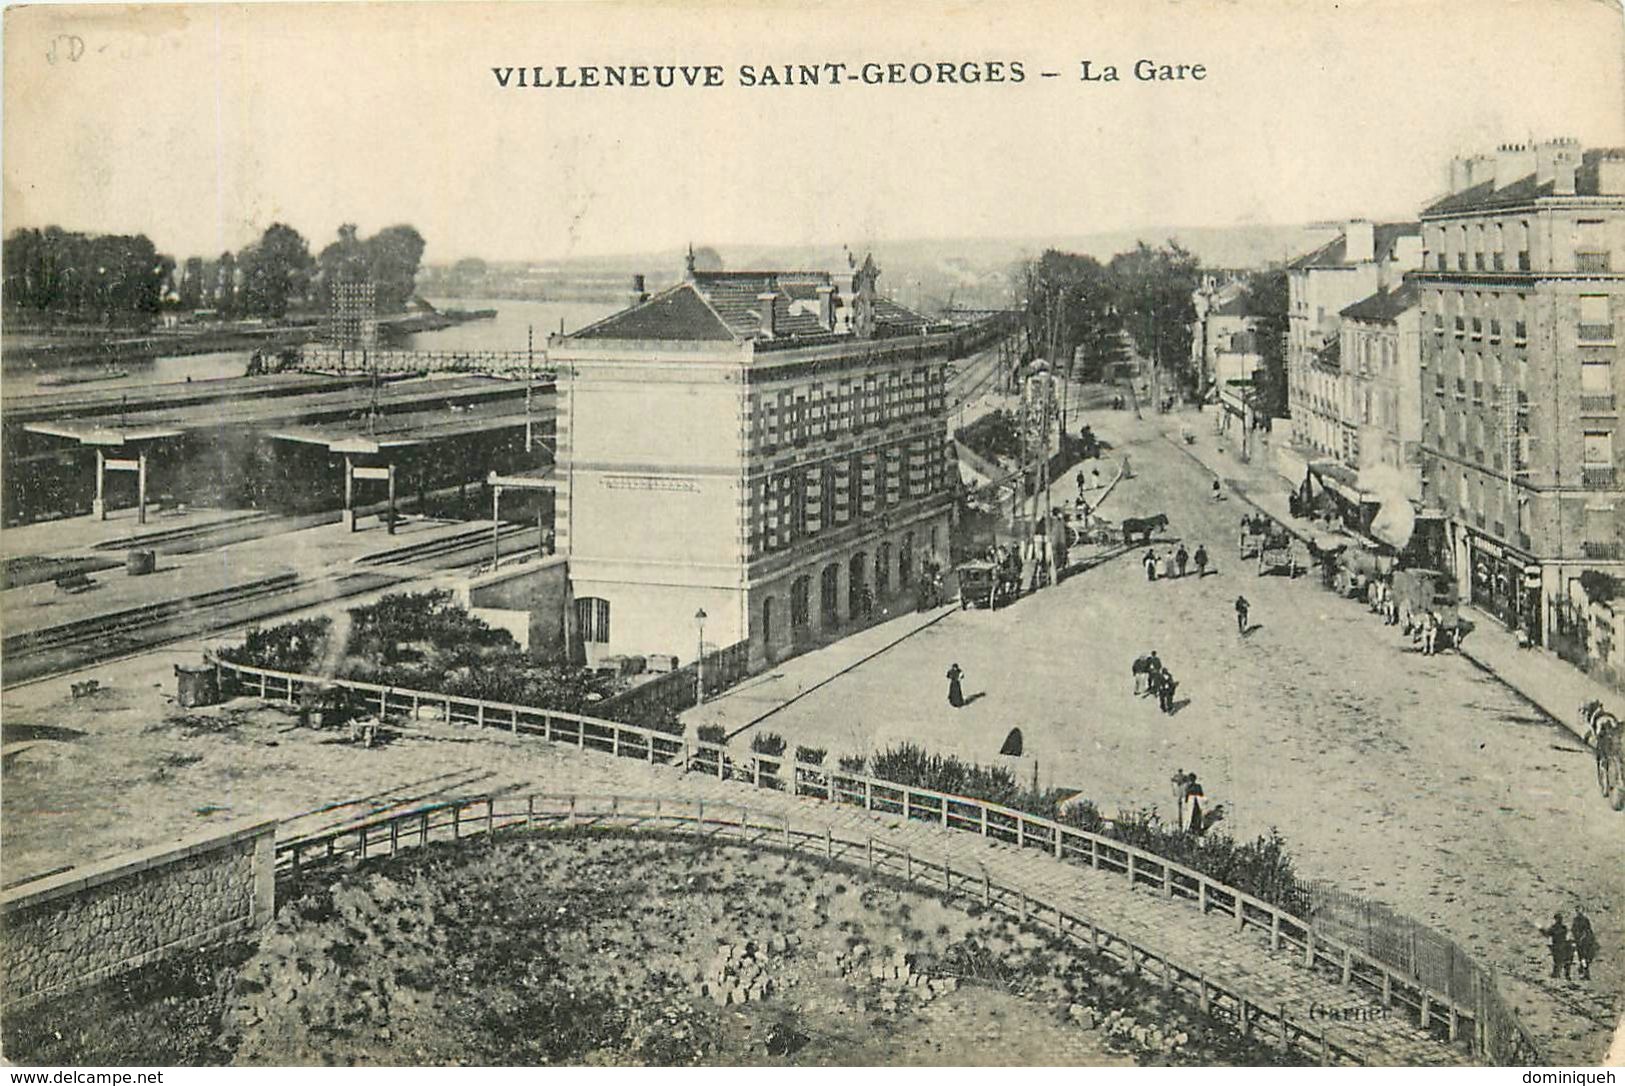 Lot de 50 CPA de Villeneuve-Saint-Georges 94 Plusieurs animations